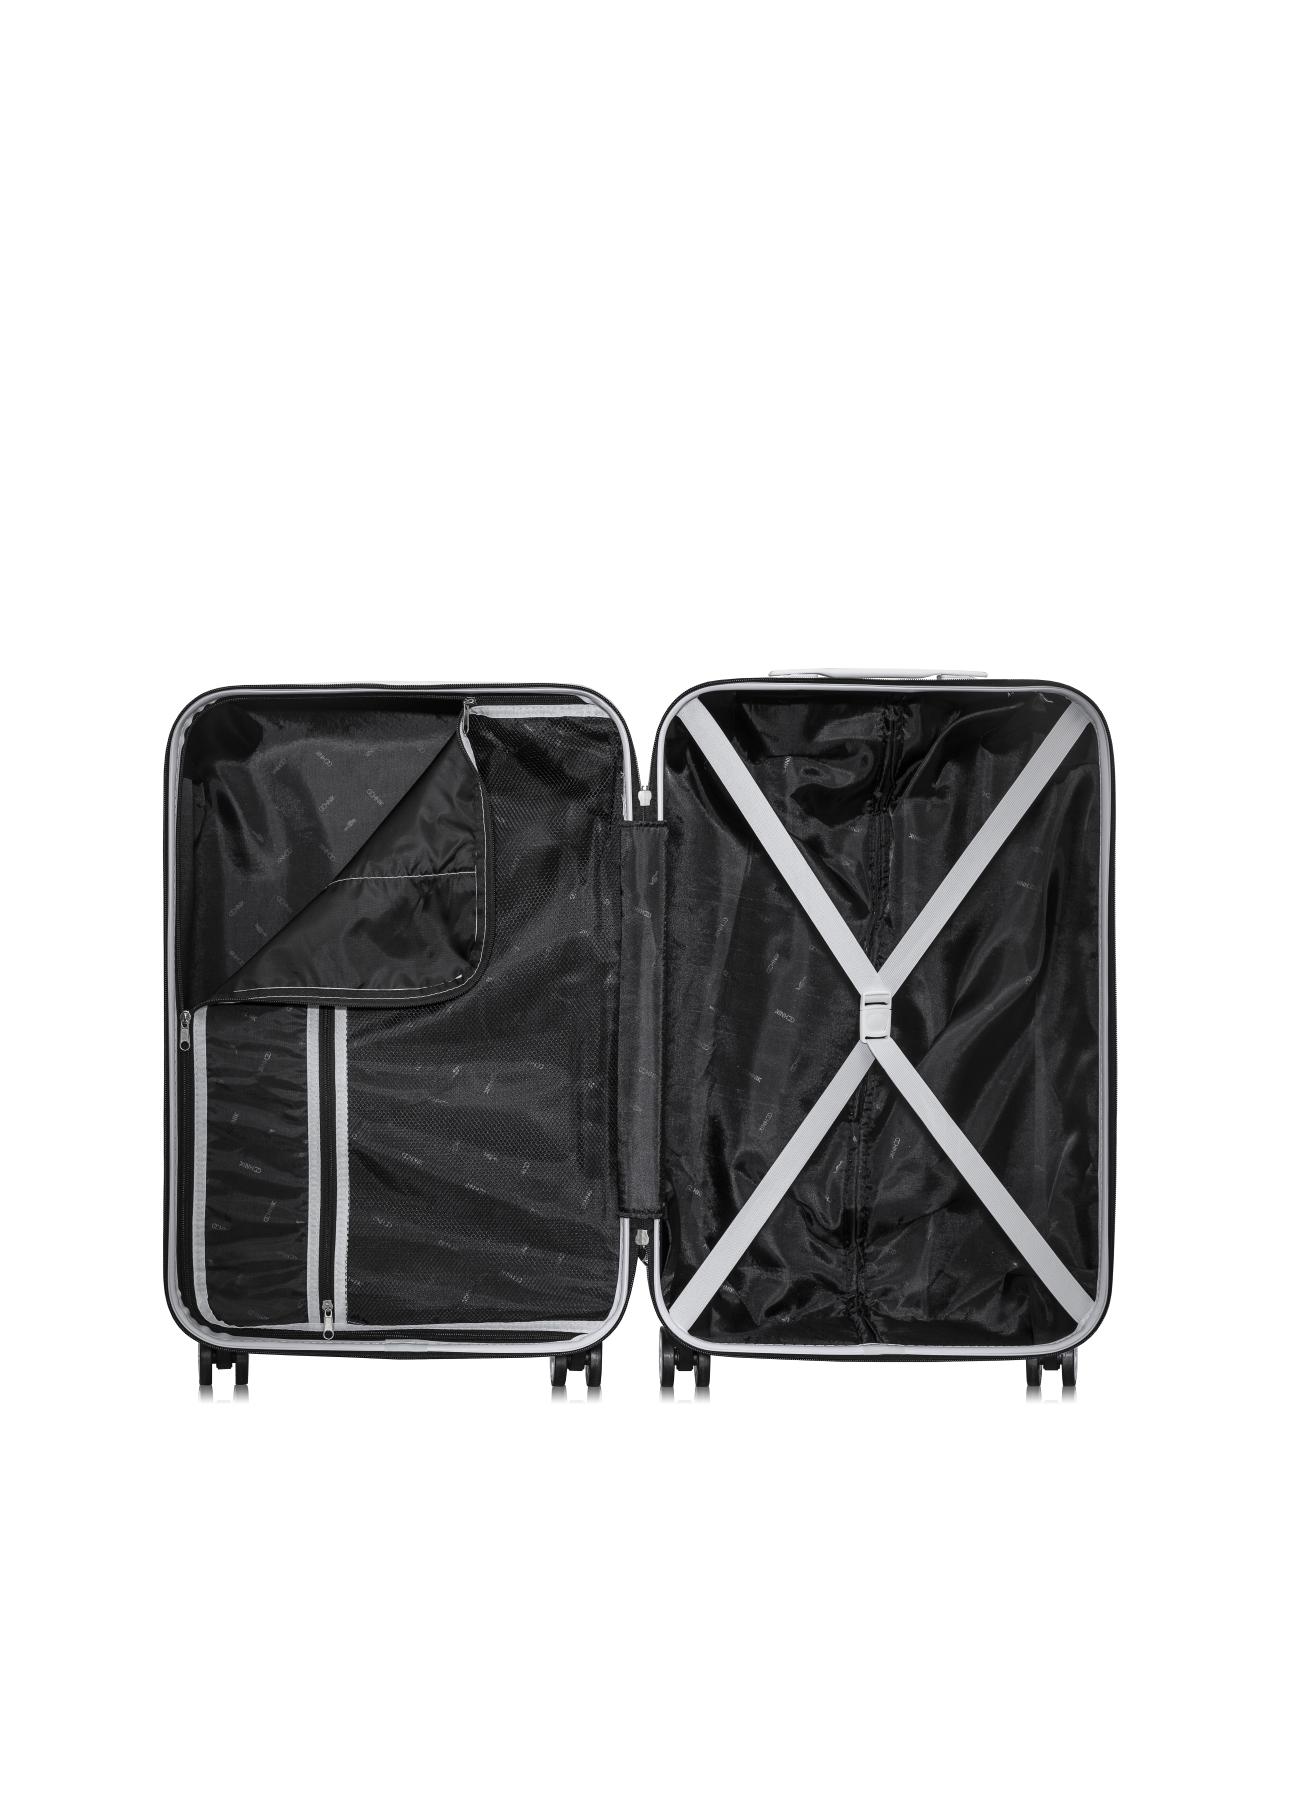 Duża walizka na kółkach WALAB-0042-99-28(Z19)